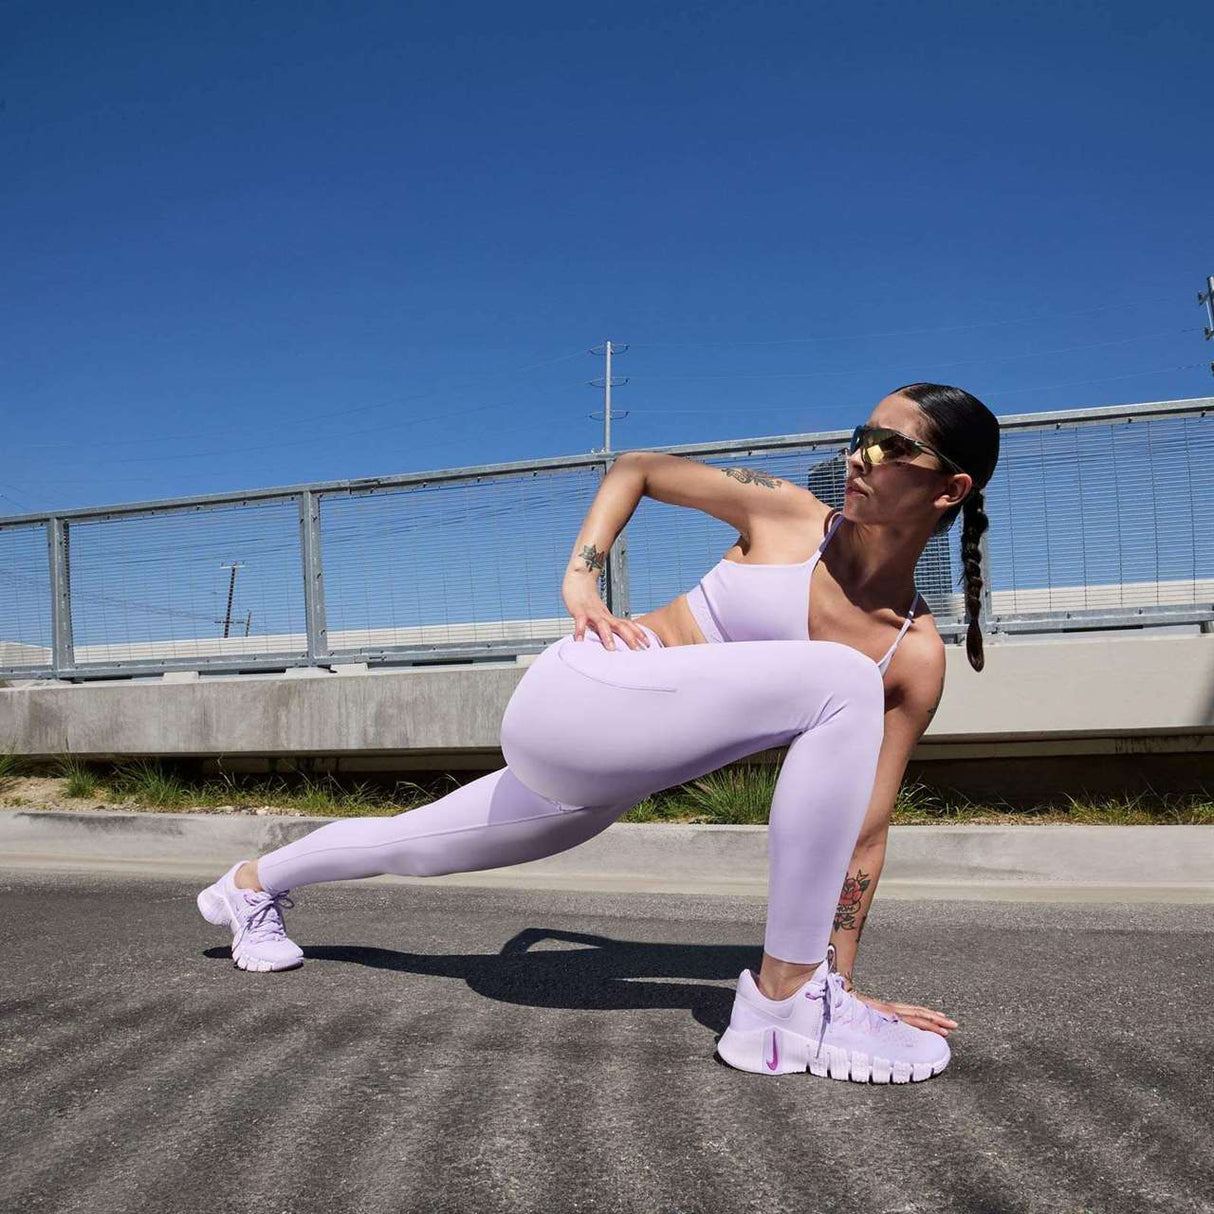 Nike Free Metcon 5 Womens Training Shoes